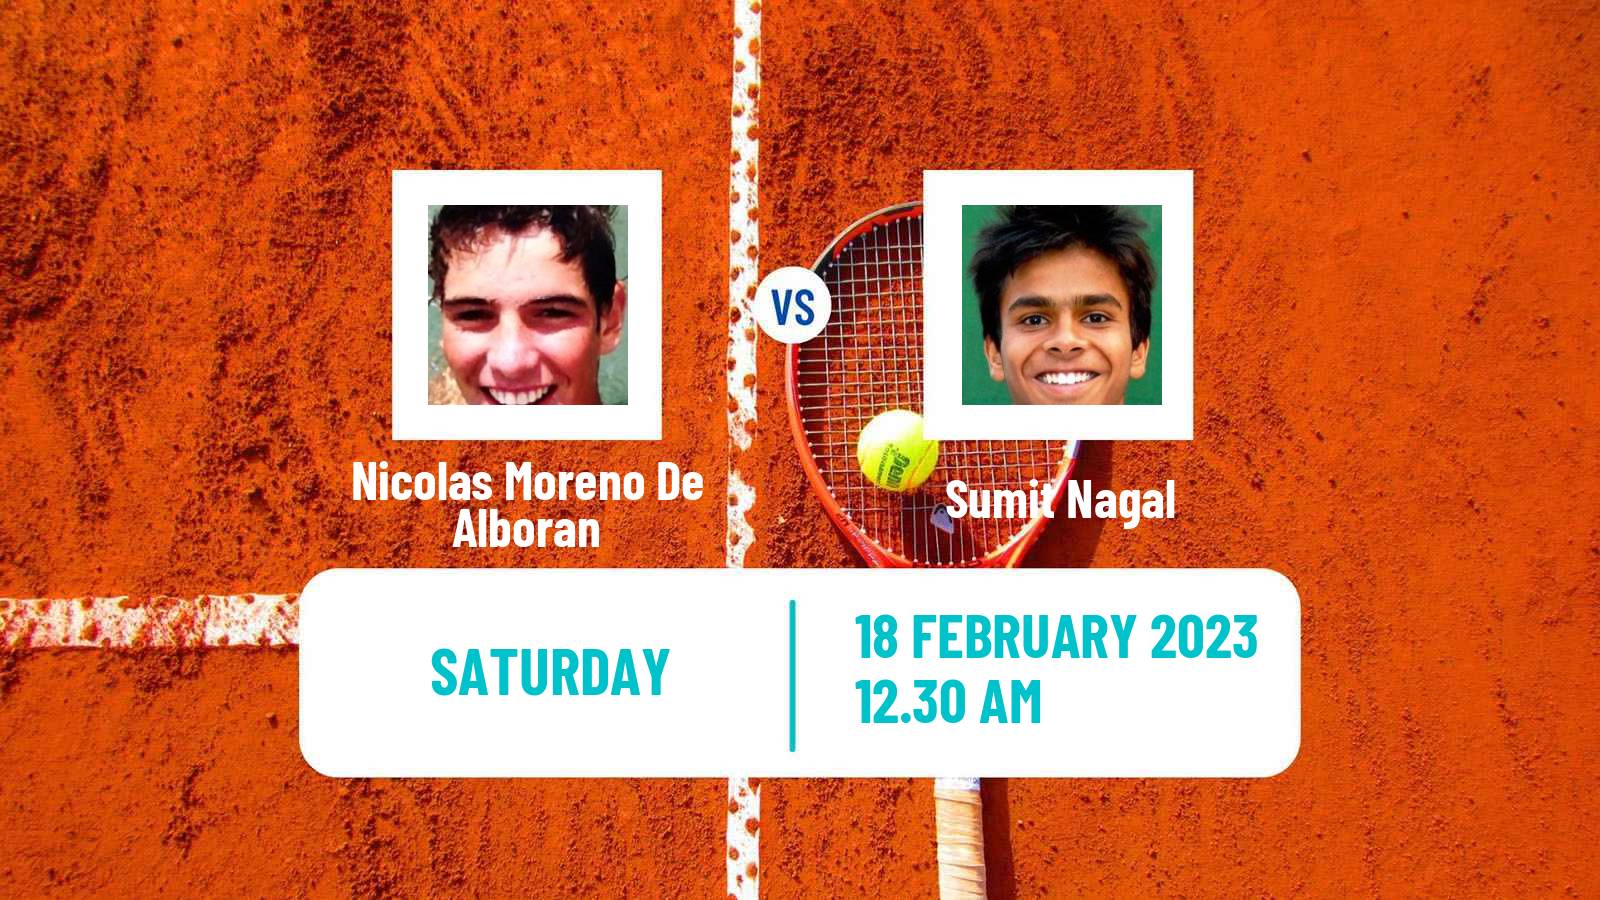 Tennis ATP Challenger Nicolas Moreno De Alboran - Sumit Nagal